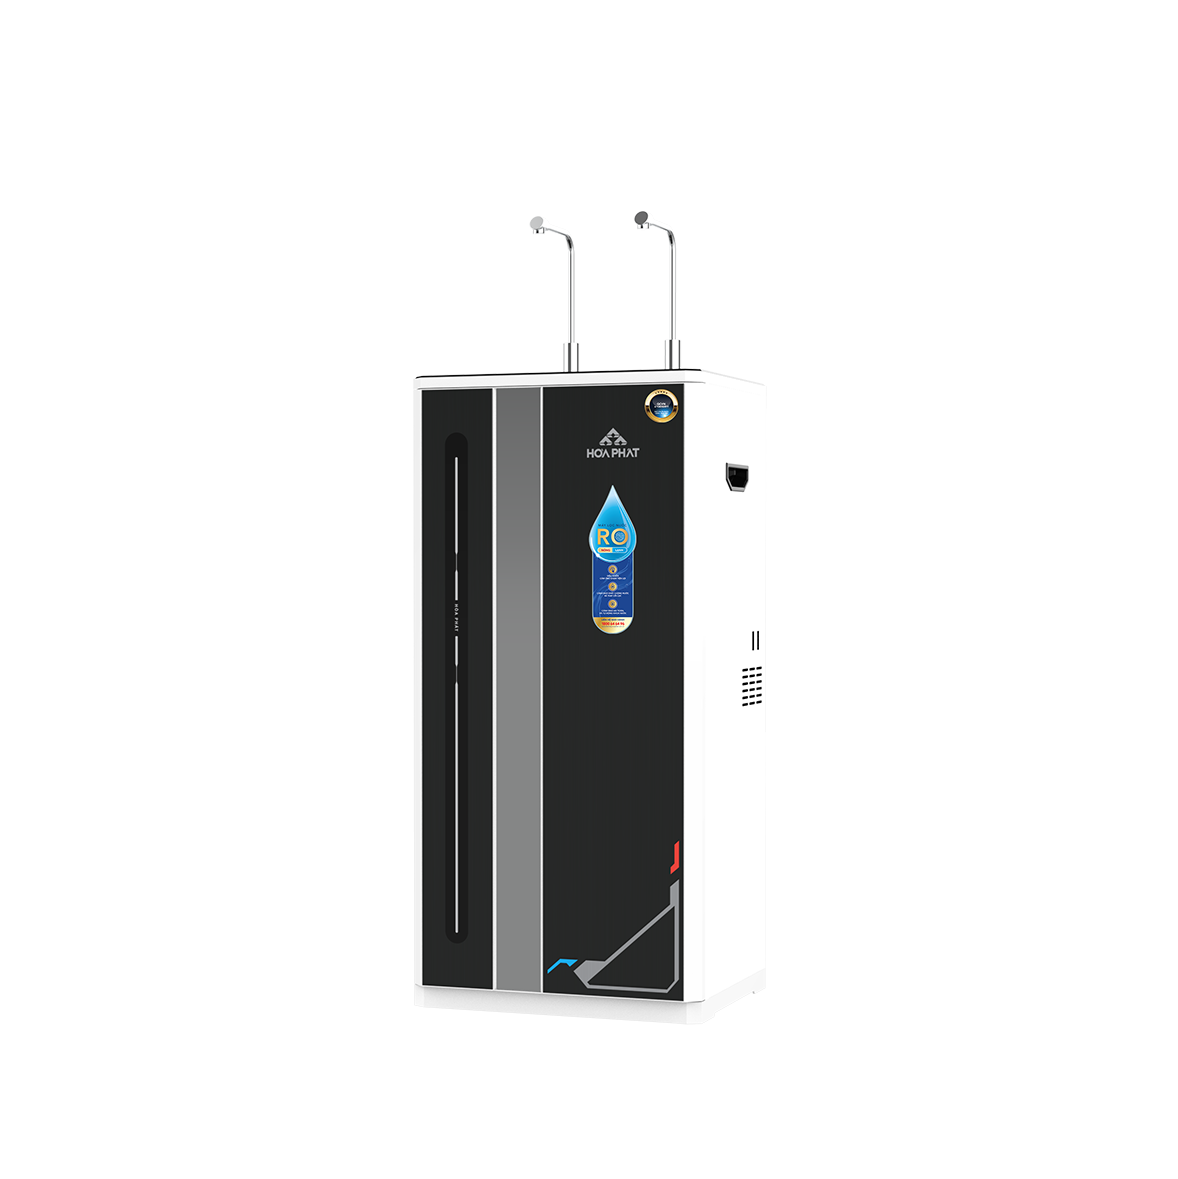 Máy lọc nước RO nóng lạnh Hòa Phát HWBR4B1021T - đạt chuẩn uống trực tiếp tại vòi - bảo hành 36 tháng - Hàng Chính Hãng